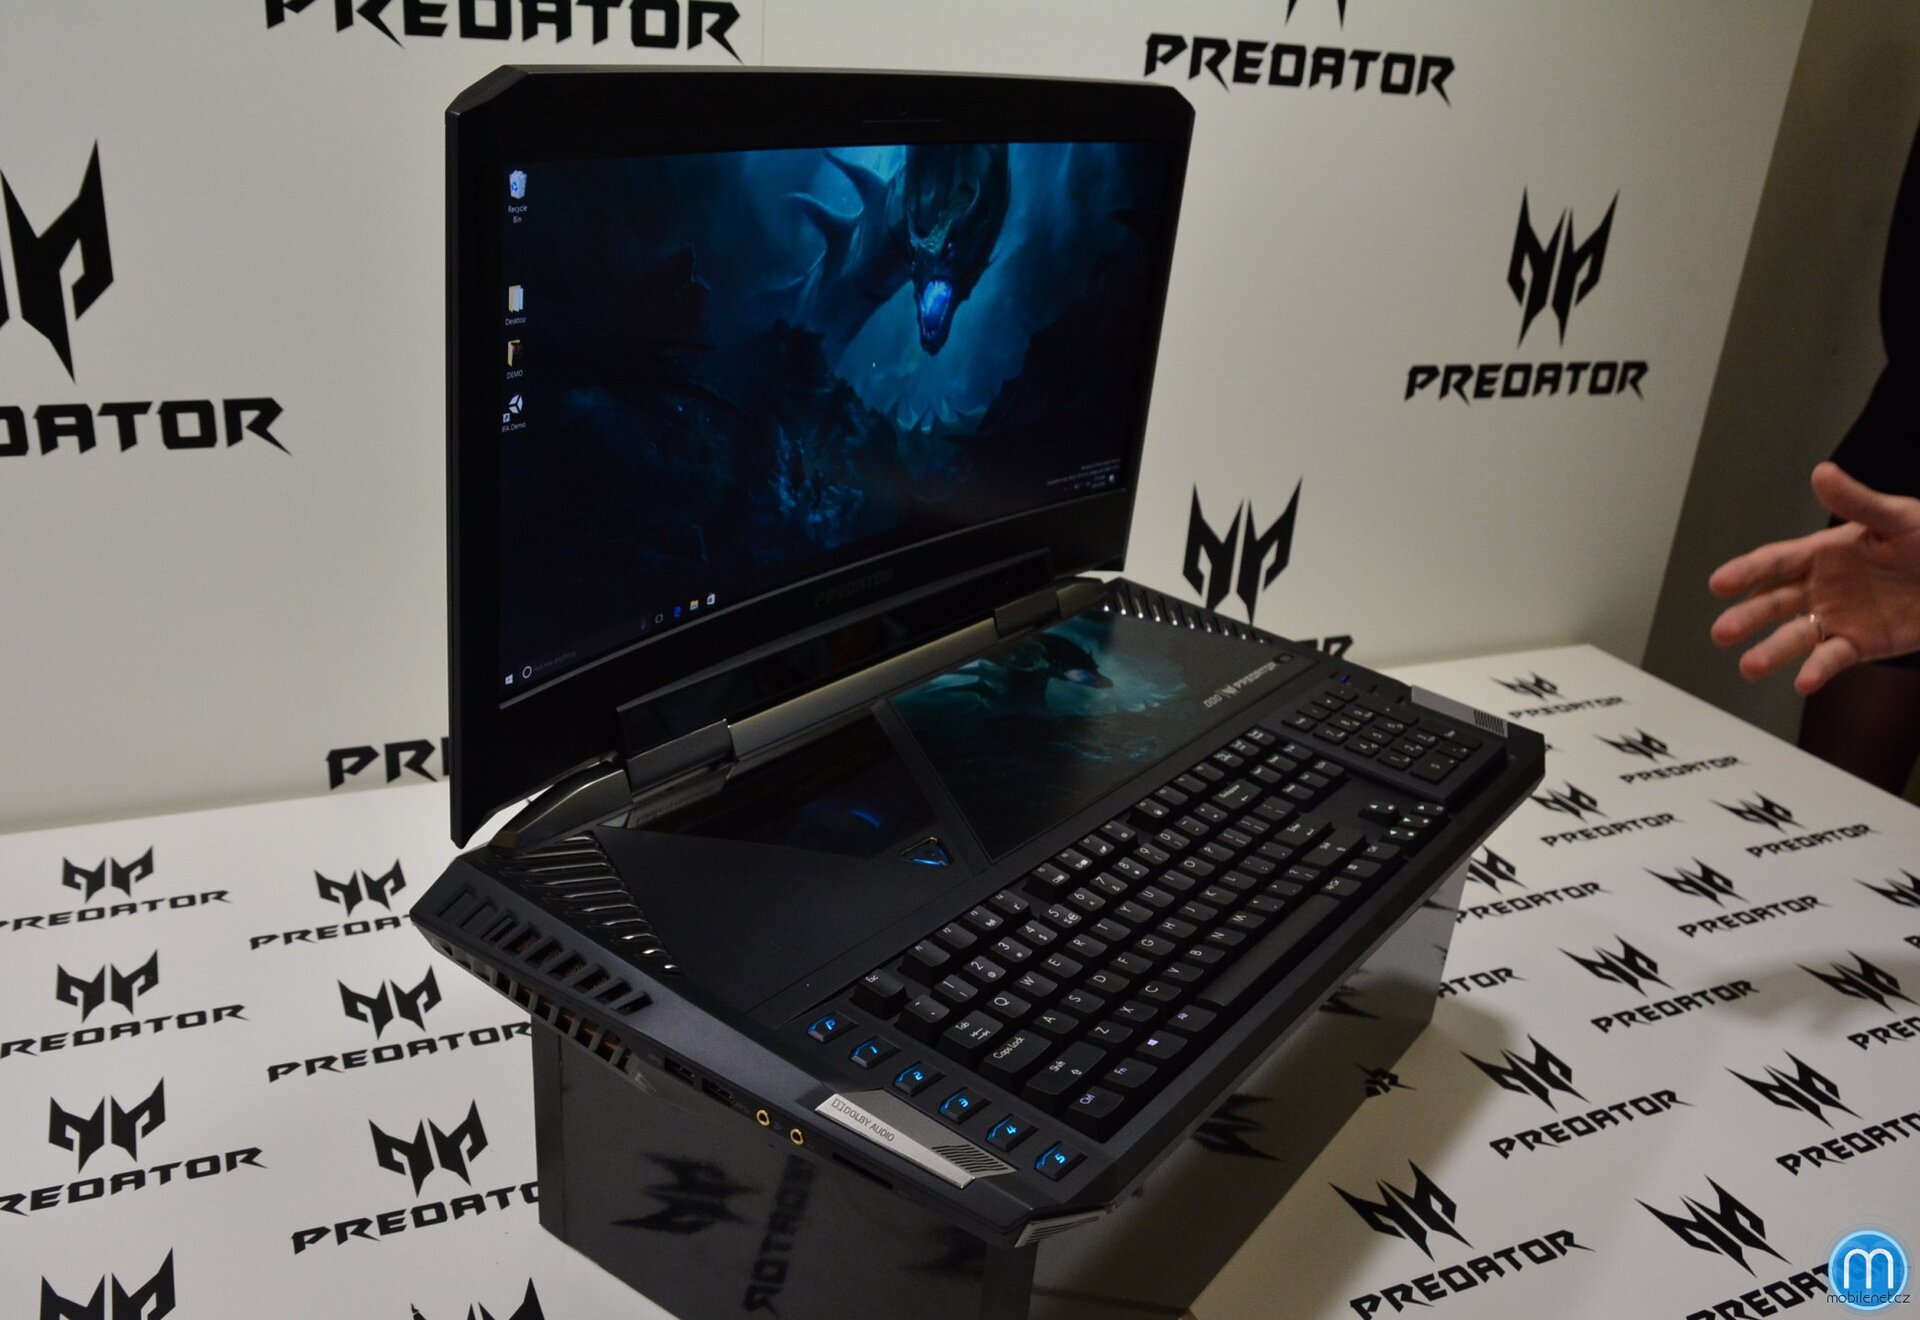 Predator 21 X